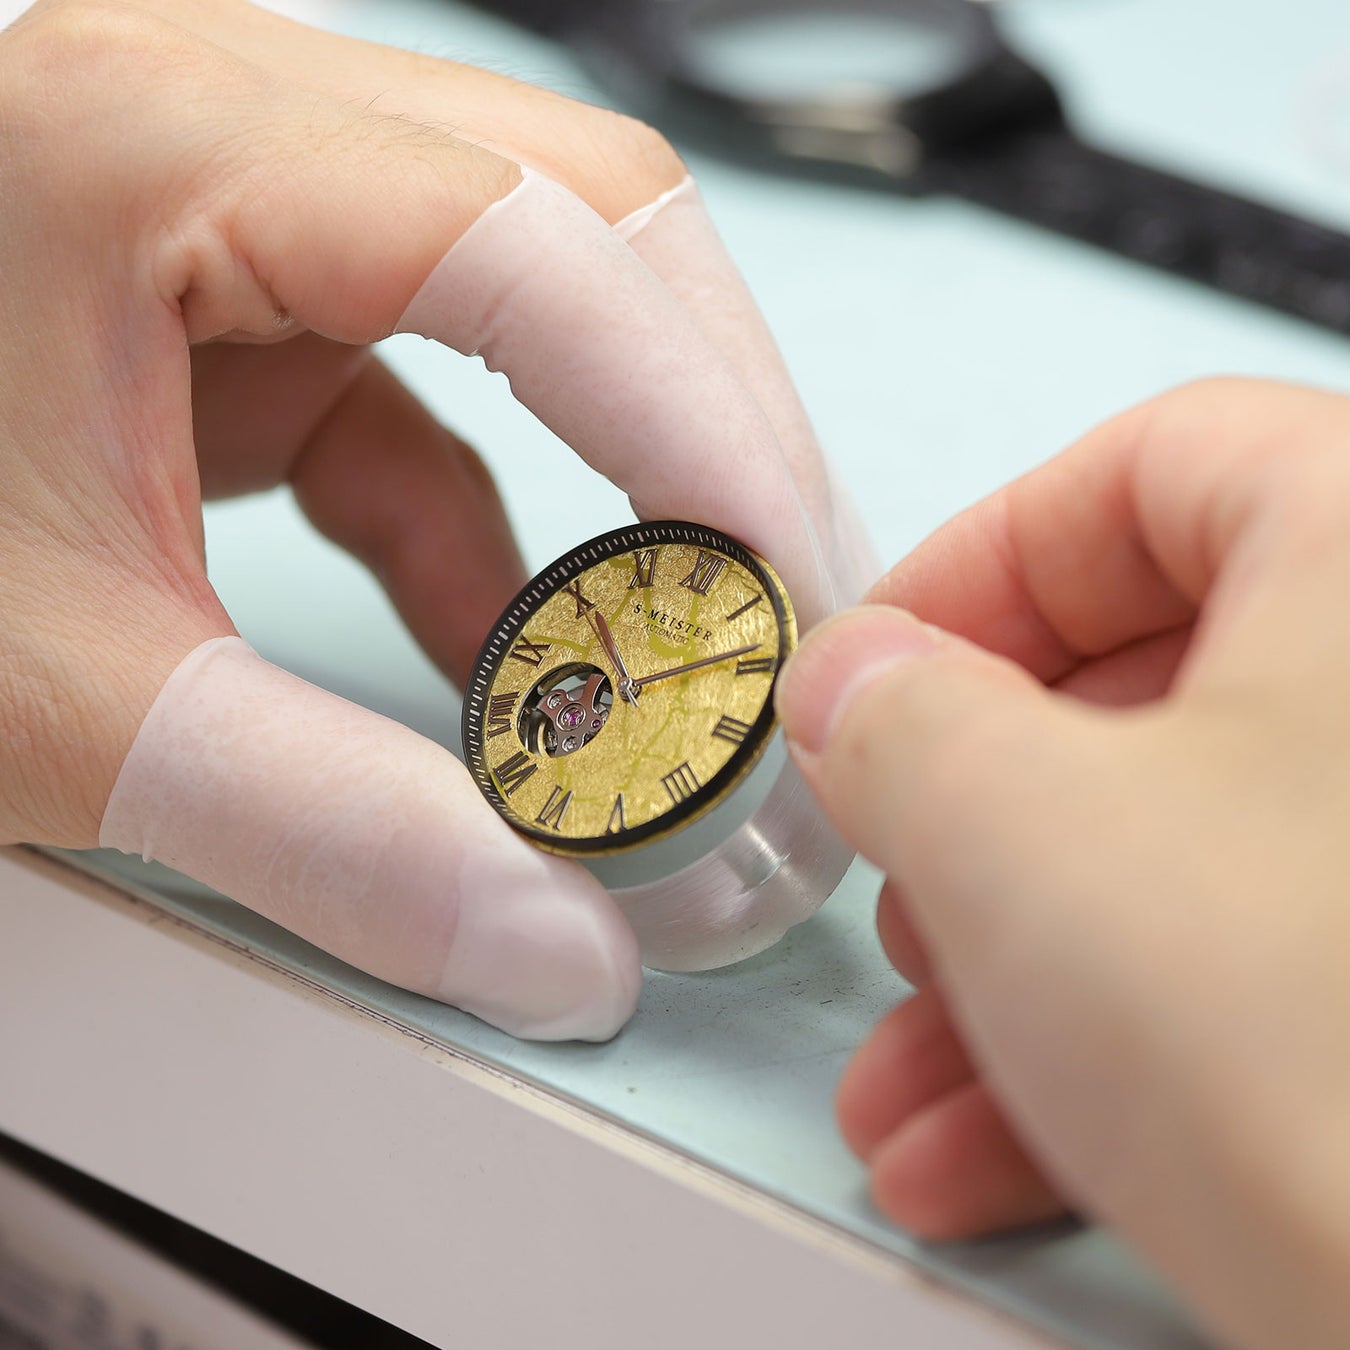 日本の伝統技術をデザインに取り入れた時計ブランド『S-MEISTER』は金沢の『縁付金箔』や『銀箔』また『漆塗』を文字盤に採用した機械式腕時計を11月19日(日)10時からMakuakeにて発売します